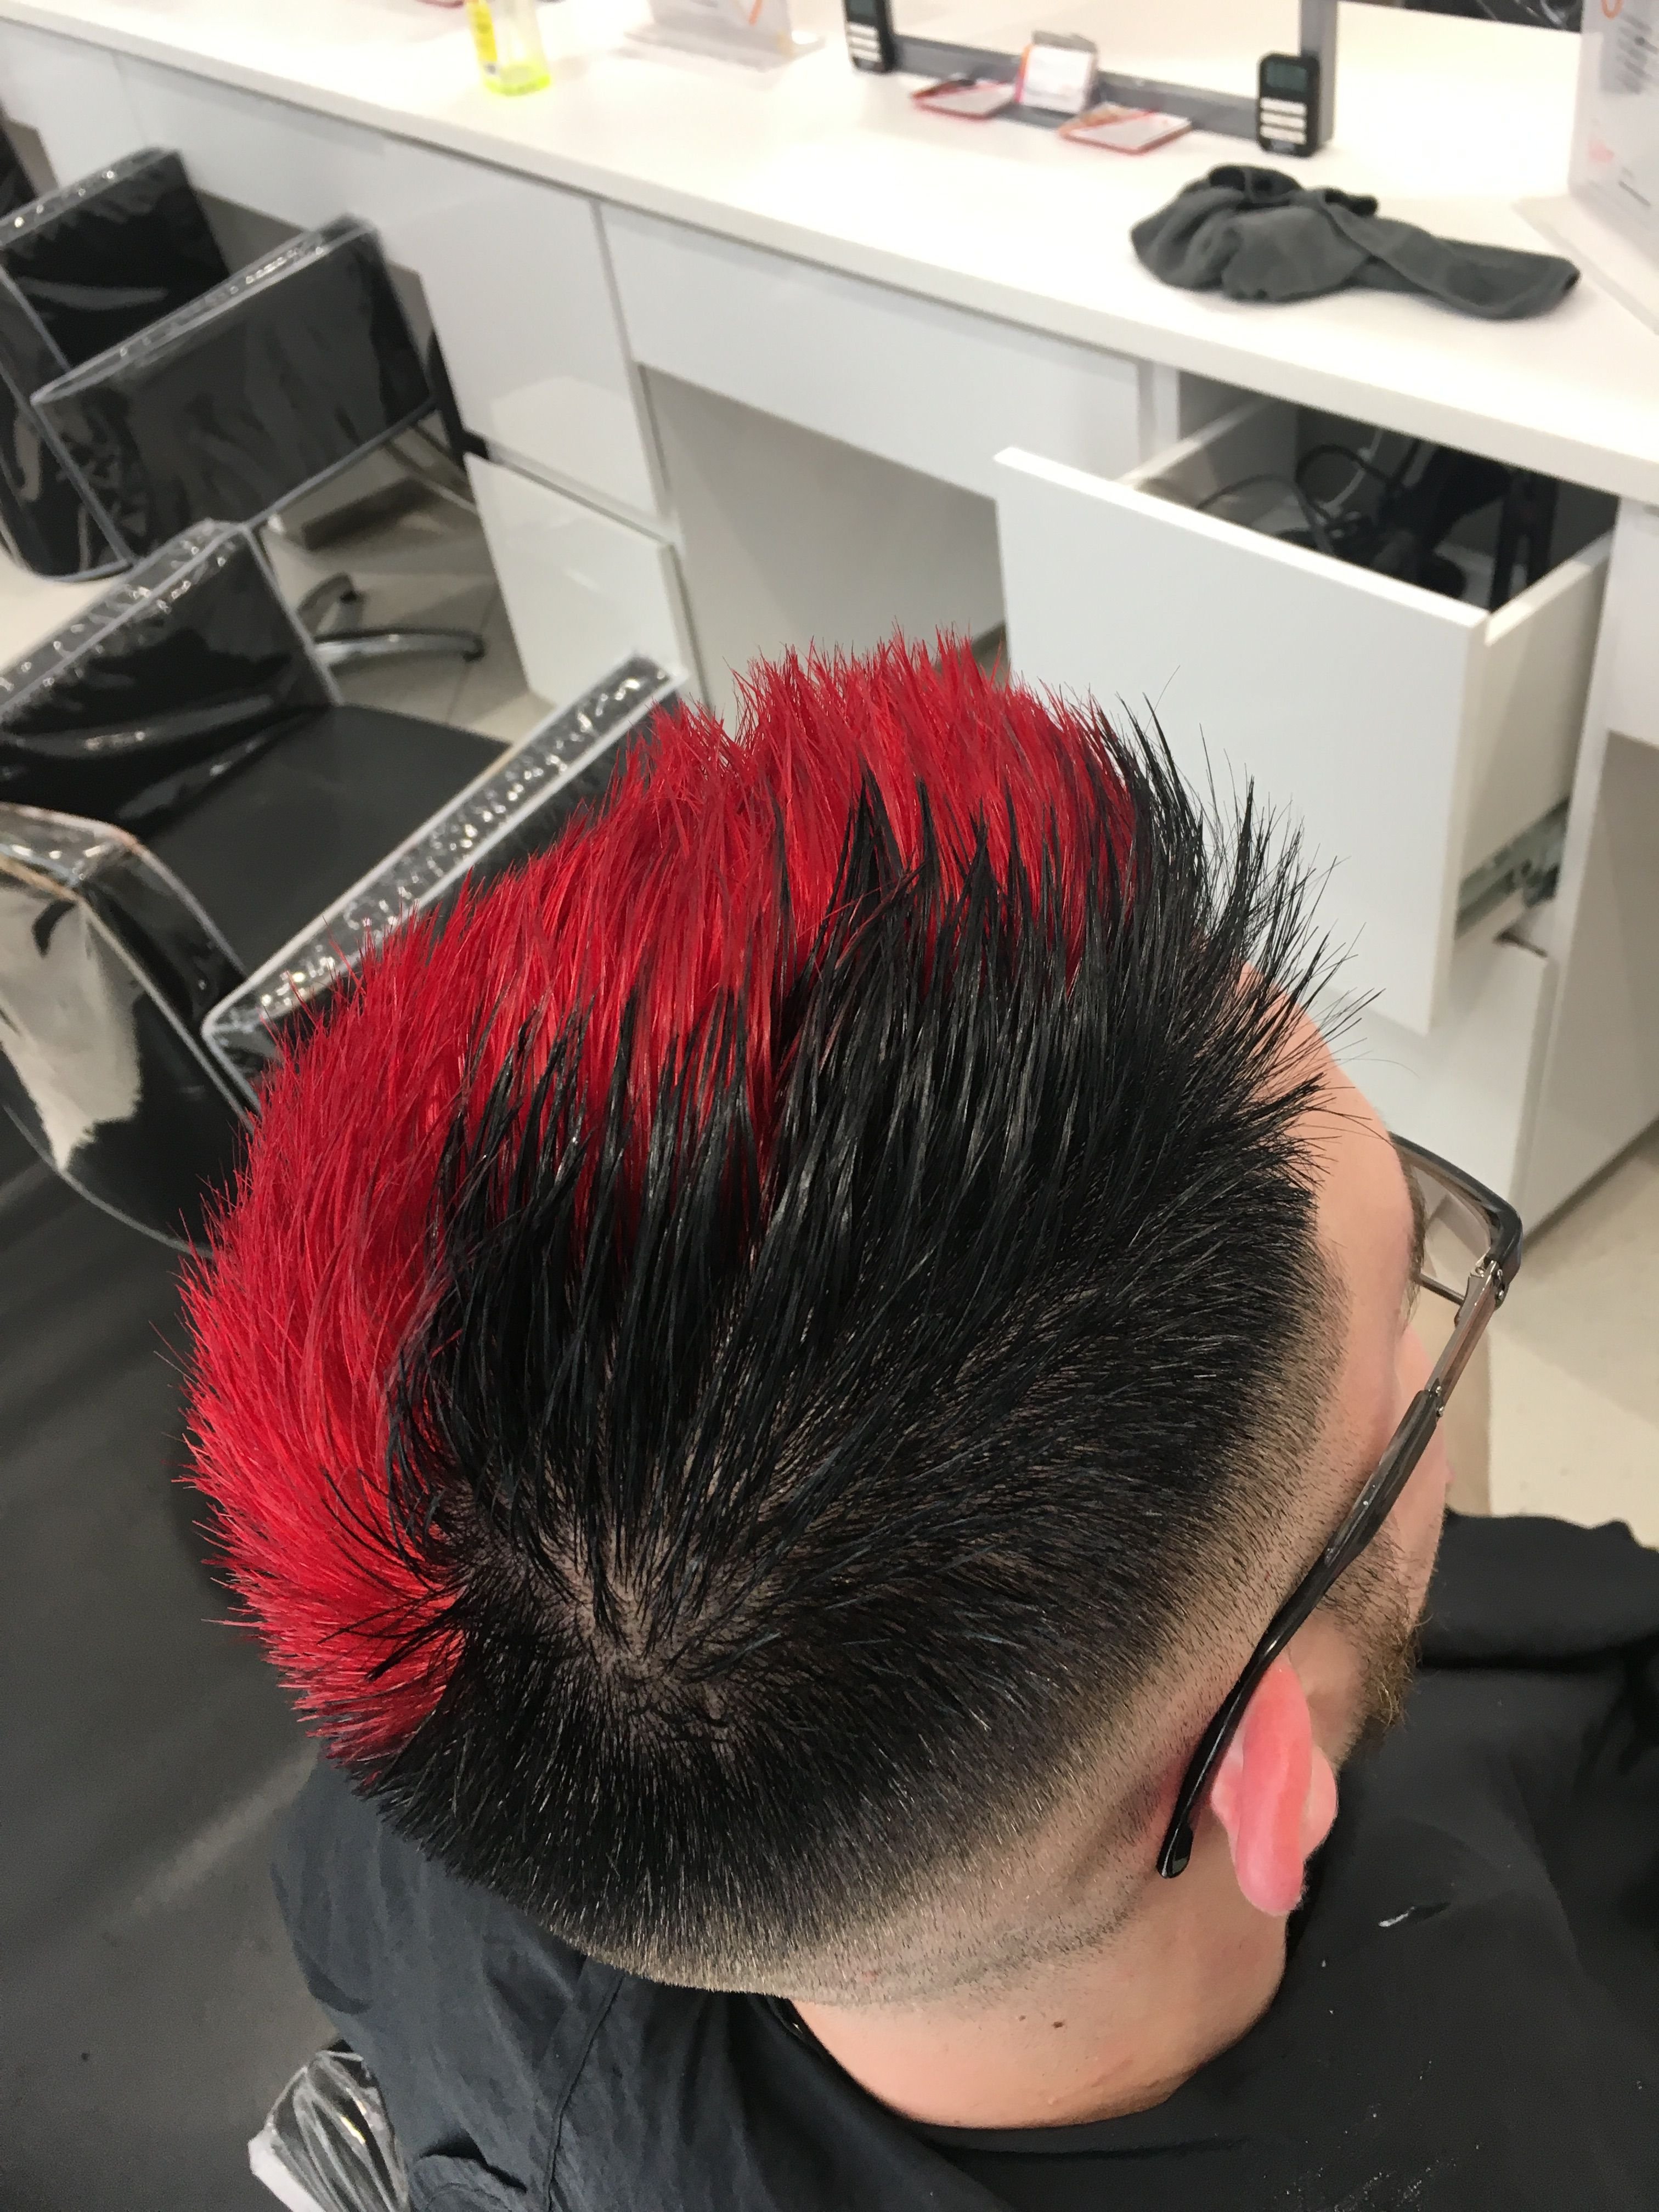 Парень красит волосы в красный